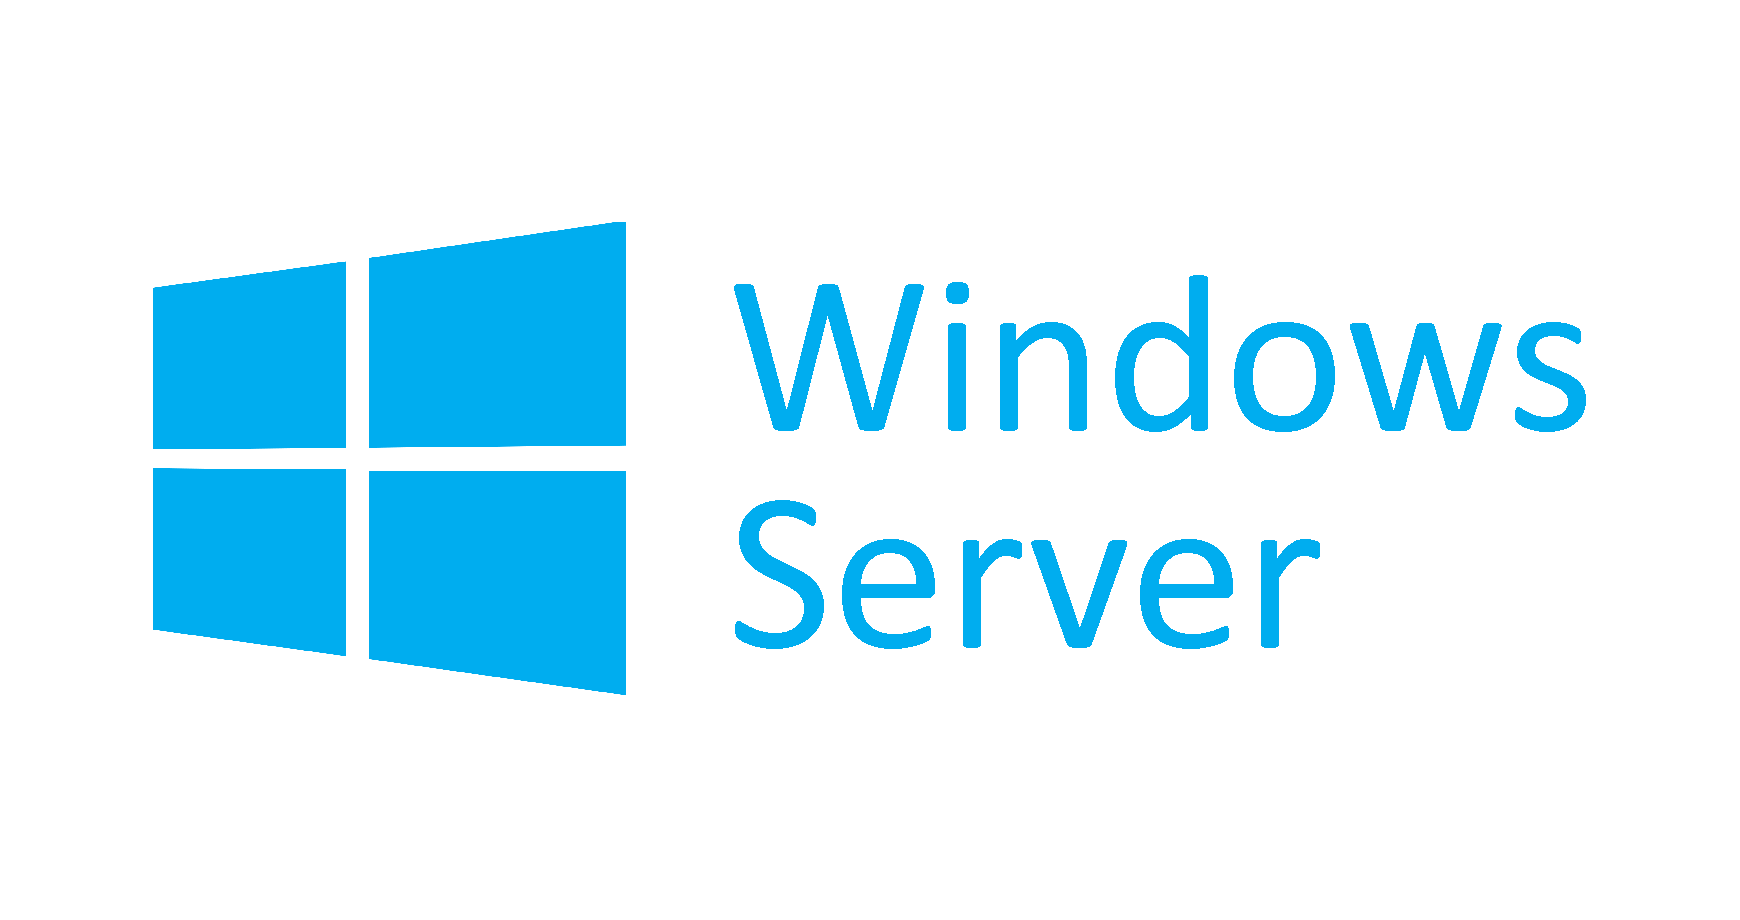 Windows Server คือ ระบบปฏิบัติการที่ออกแบบโดย Microsoft ซึ่ง Windows Server สนับสนุนการจัดการระดับองค์กร การจัดเก็บข้อมูลแอพพลิเคชันและการติดต่อสื่อสาร Windows Server มีความสำคัญต่อเสถียรภาพความปลอดภัยระบบเครือข่ายและการปรับปรุงระบบไฟล์ต่างๆ และปรับปรุงอื่น ๆ รวมถึงการปรับปรุงเทคโนโลยีการติดตั้ง รวมถึงการสนับสนุนฮาร์ดแวร์ที่เพิ่มขึ้น ไมโครซอฟท์ยังได้สร้าง SKUs เฉพาะของ Windows Server ที่มุ่งเน้นไปที่ตลาดที่บ้านและธุรกิจขนาดเล็ก Windows Server 2012 R2 เป็นรุ่นล่าสุดของ Windows Server และมุ่งเน้นไปที่ cloud computing
เวอร์ชั่นของ Windows Server
ตารางต่อไปนี้อธิบายเกี่ยวกับ Windows Server 2003 ที่มีเอกสารเป็นปัจจุบัน
เวอร์ชันของเซิร์ฟเวอร์	ลักษณะ
Windows Server 2012 R2 และ Windows Server 2012	เน้นการสนับสนุนระบบคลาวด์ด้วยคุณสมบัติต่างๆเช่นการปรับปรุง IP แอดเดรสอัพเดต Hyper-V และระบบไฟล์ใหม่ (ReFS) Windows Server 2012 R2 มีการปรับปรุงเพื่อการจำลองเสมือนการจัดการการจัดเก็บระบบเครือข่ายโครงสร้างพื้นฐานเดสก์ท็อปเสมือนการป้องกันการเข้าถึงการป้องกันข้อมูลการบริการเว็บและโครงสร้างพื้นฐานของแพลตฟอร์มแอ็พพลิเคชัน
Windows Server 2008 R2 และ Windows Server 2008	รวมคุณลักษณะการรักษาความปลอดภัยเพิ่มเติมและคุณลักษณะด้านการดูแลระบบที่ใช้ร่วมกันกับ Windows Vista: สแต็คระบบเครือข่ายที่เขียนใหม่ไฟร์วอลล์ที่ได้รับการปรับปรุงระบบเทคโนโลยี .NET Framework เพิ่มเติมและการปรับปรุงระบบเคอร์เนลไฟล์และหน่วยความจำจำนวนมาก
Windows Server 2003 R2 และ Windows Server 2003	ผสานรวมคุณลักษณะต่างๆจาก Windows XP รวมถึงการติดตั้งและบูรณาการระบบเครือข่ายที่ดีขึ้นการปรับปรุงบริการเว็บและความสามารถที่เพิ่มขึ้นสำหรับ DTFS

SKU เซิร์ฟเวอร์ Windows อื่น ๆ
ตารางต่อไปนี้อธิบายเกี่ยวกับ Windows Server รุ่นพิเศษ

SKU	ลักษณะ
Windows Server Essentials 2012 และ 2012 R2	ความต่อเนื่องของ Small Business Server และมุ่งเน้นการผนวกรวมกับคอนโซลการจัดการแบบครบวงจร อิงตาม Windows Server 2012 และ Windows Server 2012 R2
Windows Essential Business Server 2008	ออกแบบมาสำหรับธุรกิจขนาดกลางสำหรับผู้ใช้งานสูงสุด 300 รายและมุ่งเน้นการทำงานร่วมกับคอนโซลการจัดการ ขึ้นอยู่กับ Windows Server 2008
Windows Small Business Server	ออกแบบมาเพื่อเป็นชุดเซิร์ฟเวอร์แบบรวมสำหรับธุรกิจขนาดเล็กถึงขนาดกลางที่มีผู้ใช้ไม่เกิน 75 ราย ขึ้นอยู่กับระบบปฏิบัติการ Windows Server ขึ้นอยู่กับ Windows Server 2008 R2
Windows Home Server และ Windows Home Server 2011	ได้รับการออกแบบมาสำหรับบ้านที่มีพีซีหลายเครื่องในเครือข่ายและเน้นการแชร์ไฟล์การเข้าถึงระยะไกลและการสำรองข้อมูลอัตโนมัติ ขึ้นอยู่กับ Windows Server 2003 และ Windows Server 2008 R2
license windows server , เช่า license windows server ,what is windows server,windows server คืออะไร,microsoft sql server , เช่า license windows server ที่ไหนดี, เช่า license windows server ราคาถูก, เช่า license windows server plesk,ไรืกนไห หำพอำพ,license windows server 2008 , license windows server 2012 ,license windows server 2014 ,license windows server 2016 ,license windows server2016, license windows server 2019 , VPS Windows , SPLA License (Microsoft Service Provider License Agreement) คืออะ , วีธีเปิด windows hotspot , Windows Admin Center คือ , node js คือ , Plesk คืออะไร ? , MailEnable คืออะไร ? , colocation server คือ , windows server 2008 ราคา ,windows server ราคา ,windows server 2016 ราคา ,windows server เช่า , windows server spla license,